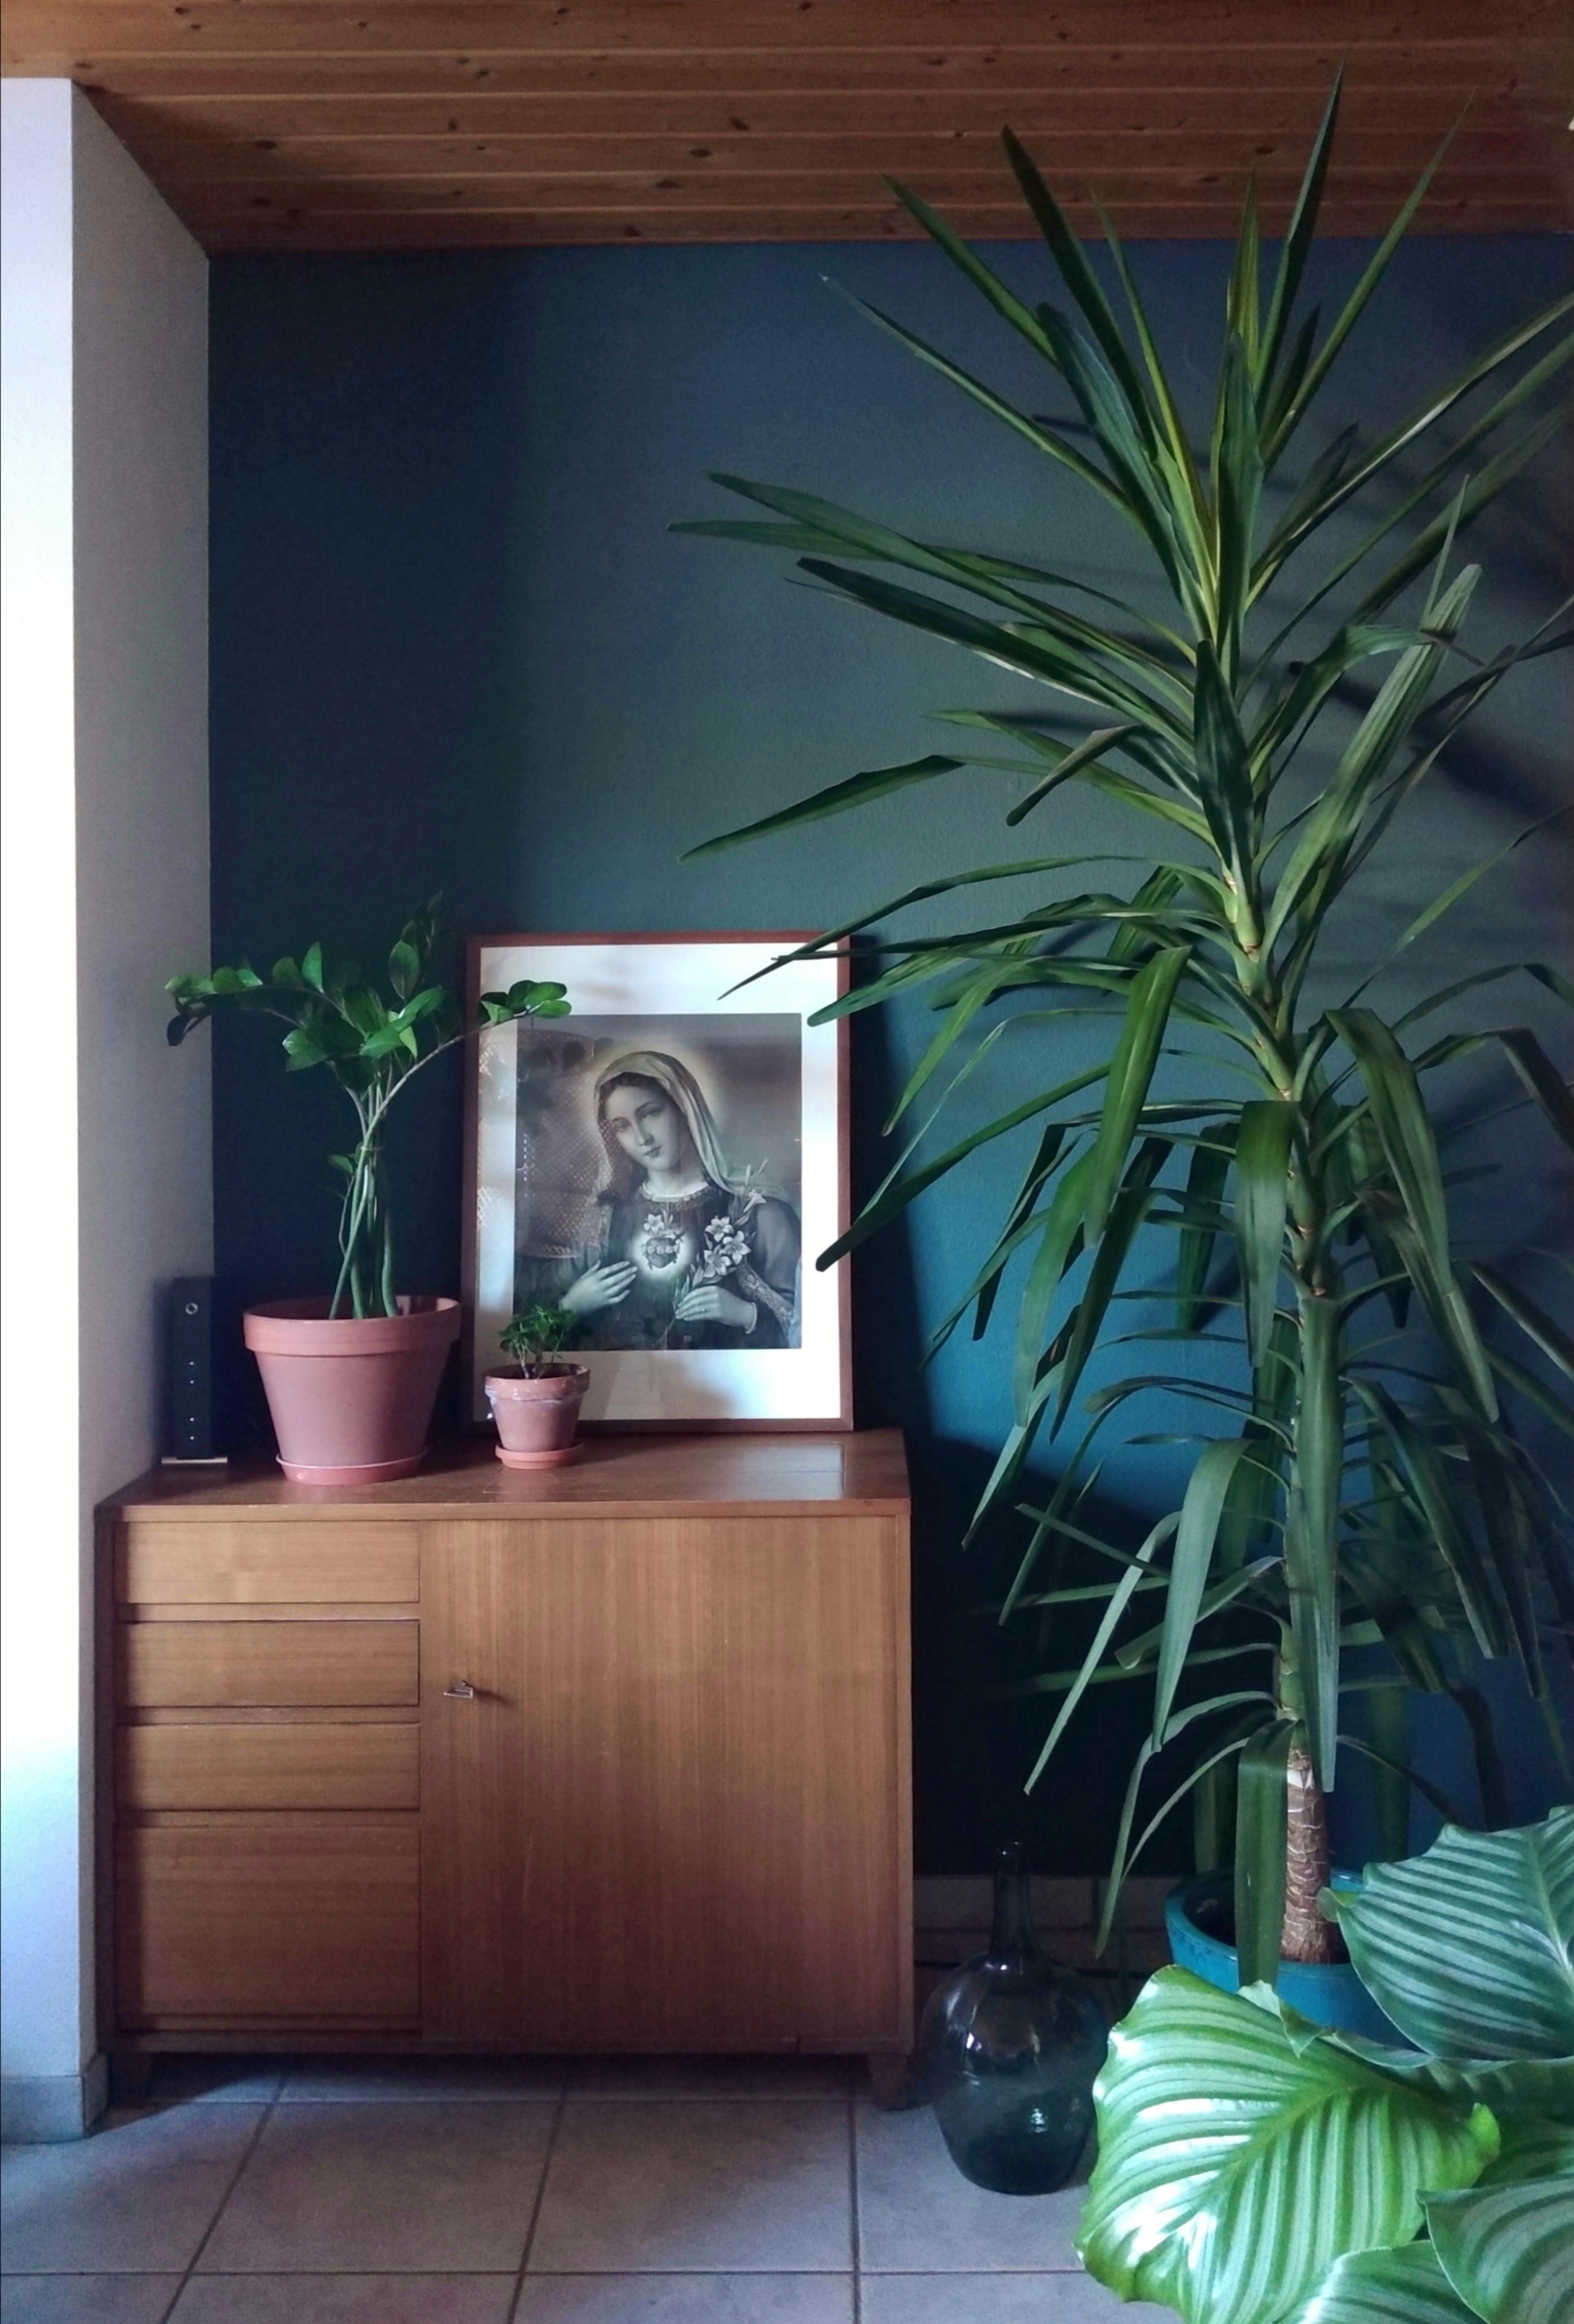 Meine neue, große Mitbewohnerin ist eingezogen. #wohnzimmer #yucca #palme #pflanzenliebe #schönerwohnenfarbe #vintage 